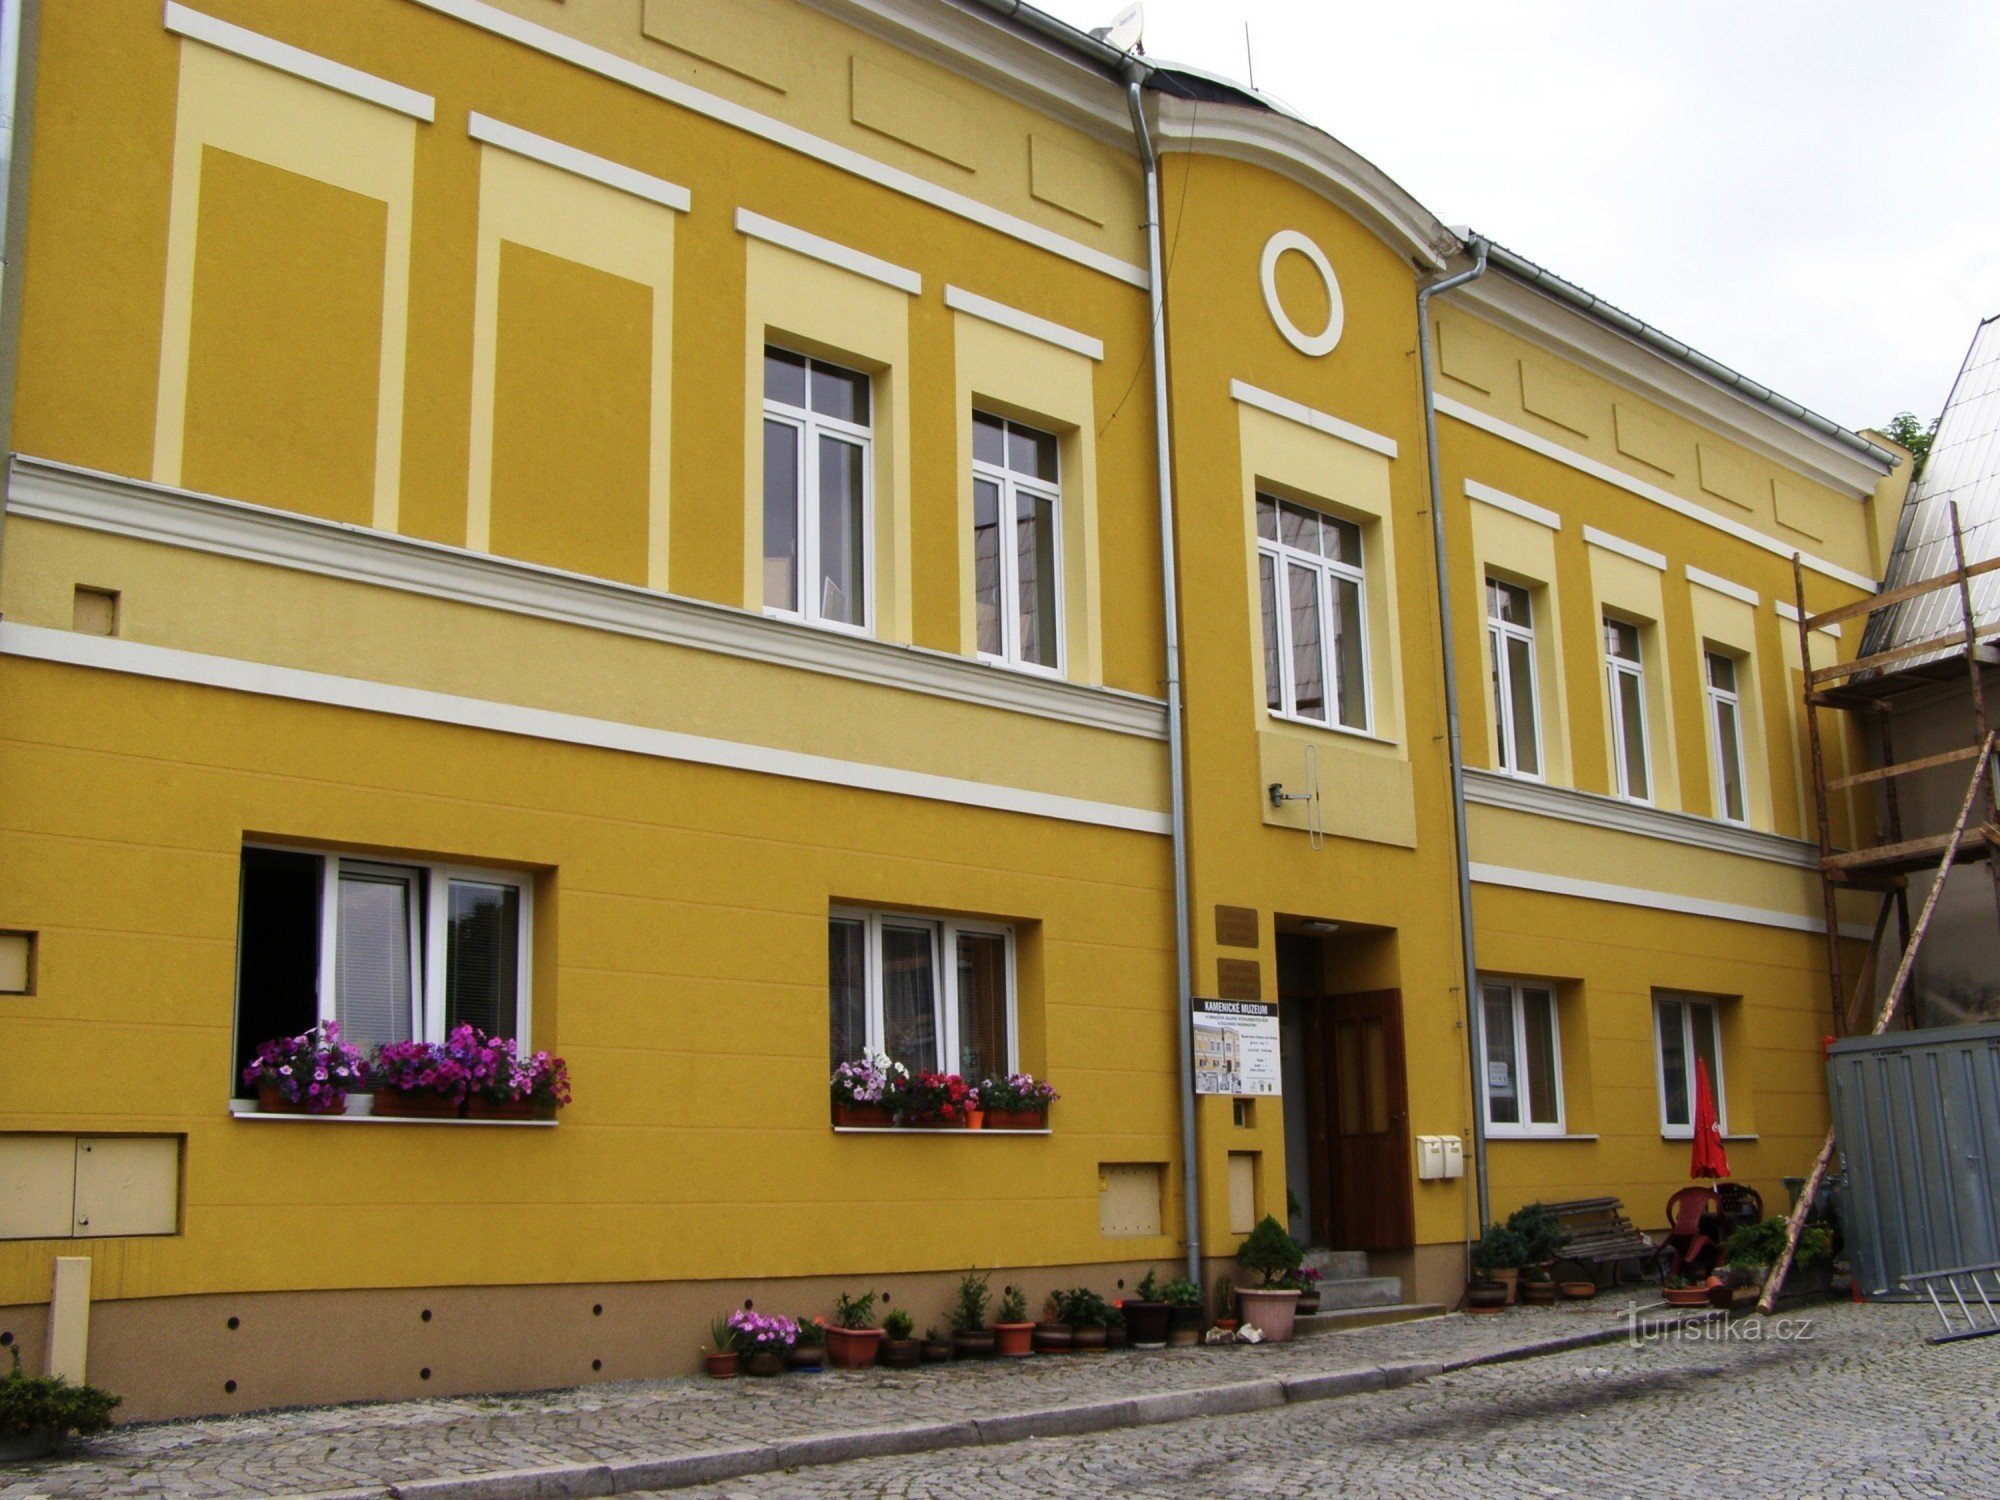 ズロヴァ - カメニケ博物館、観光案内所、図書館